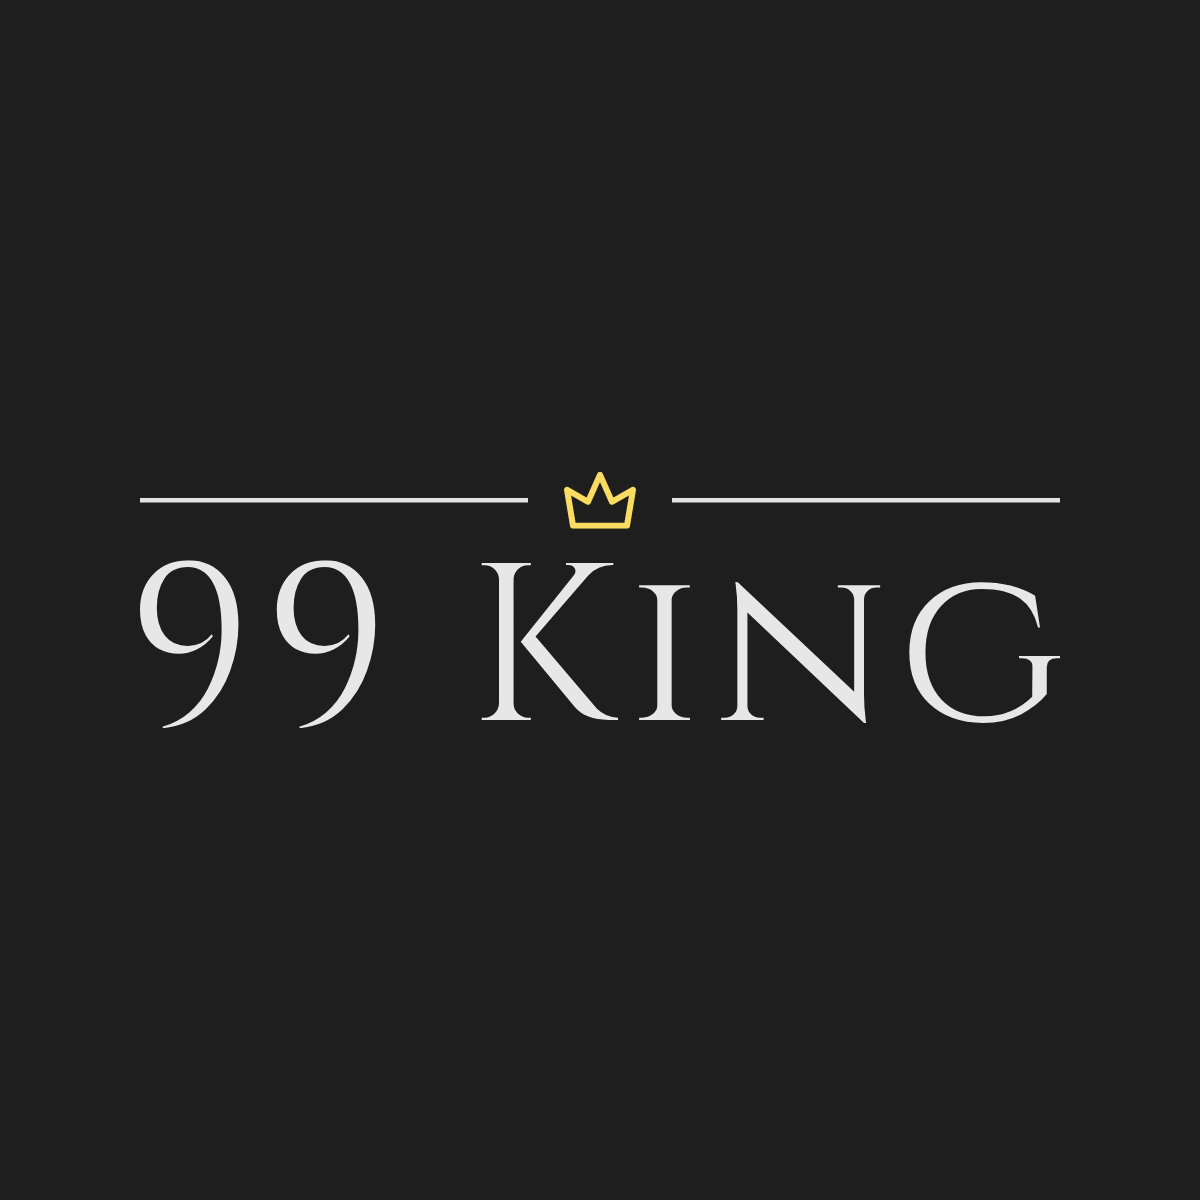 99 King